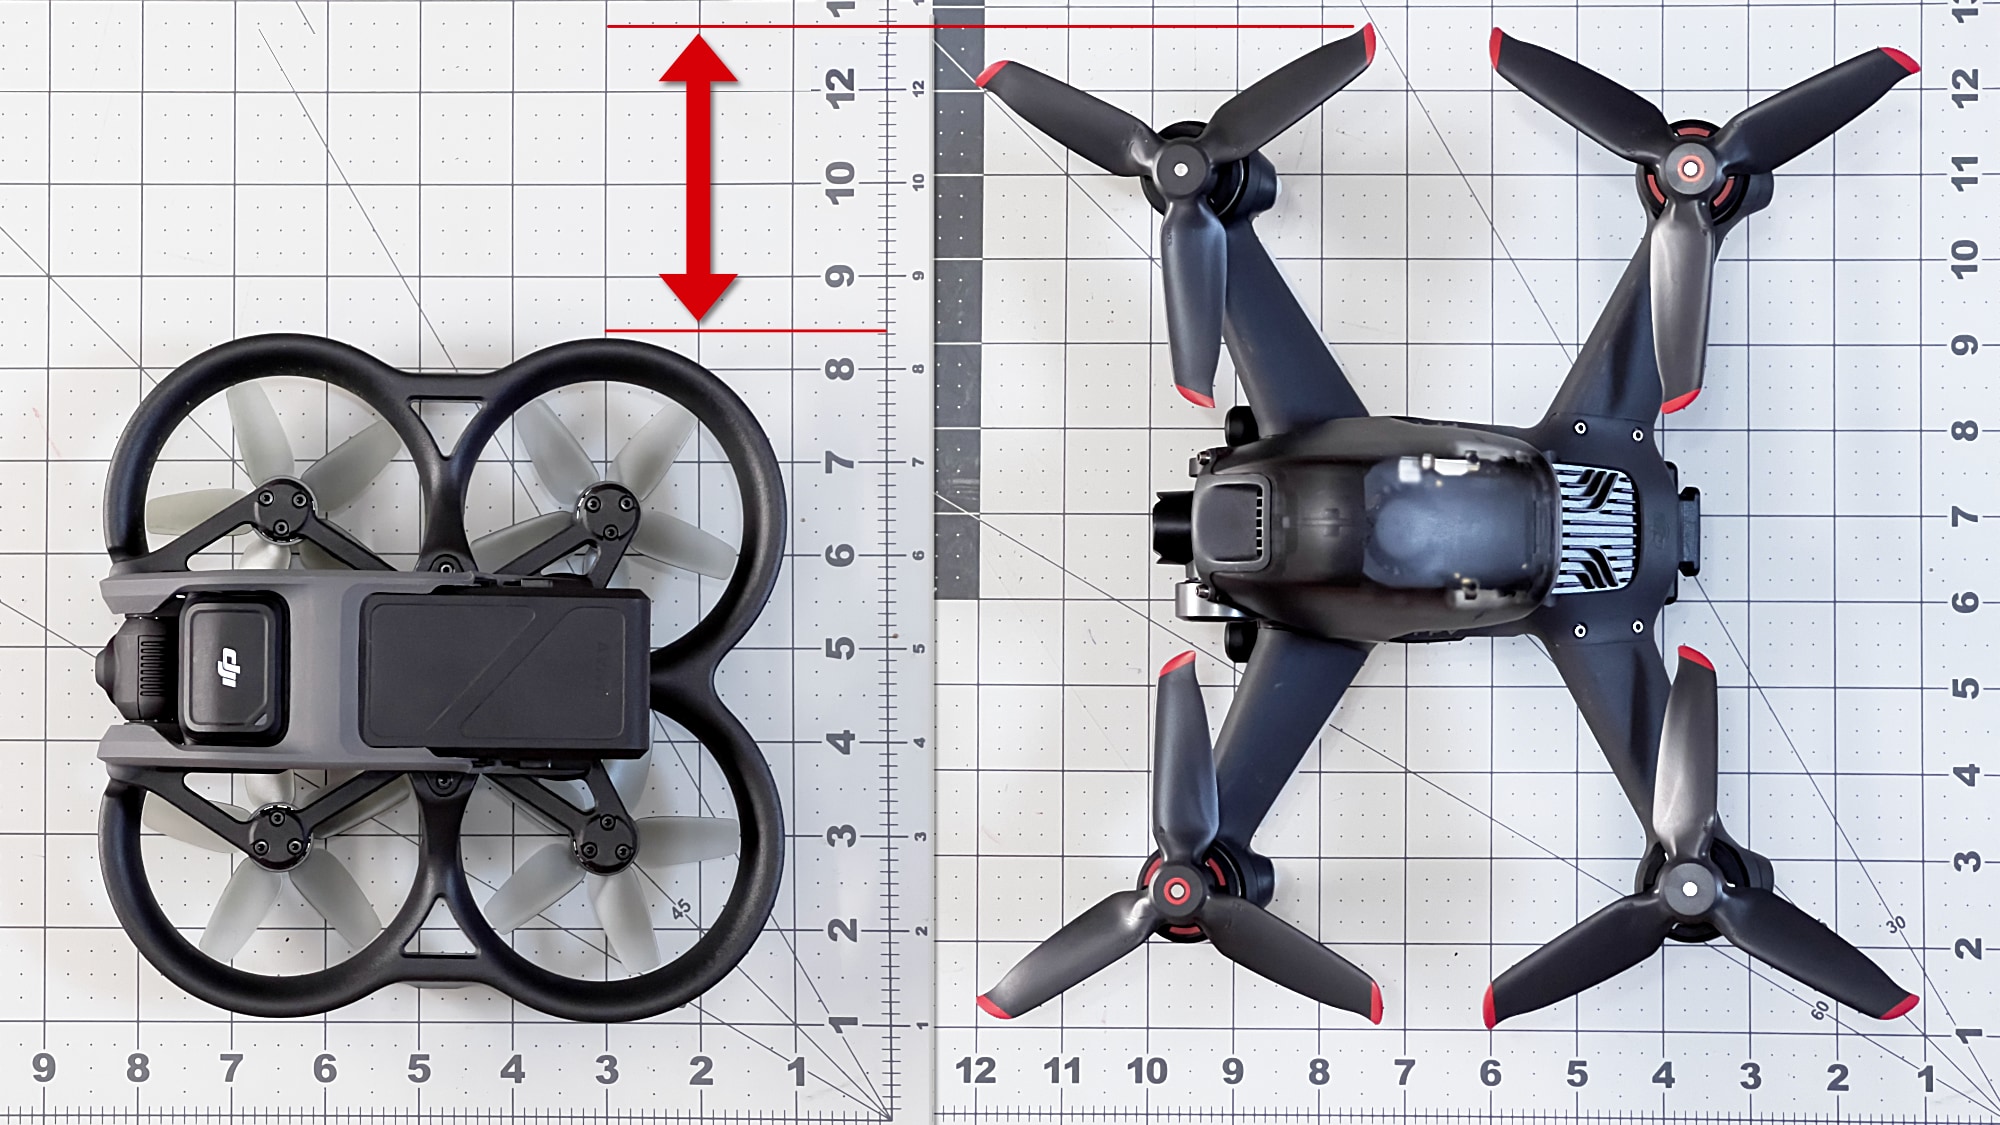 DJI Avata vs. DJI FPV Drone - Is It an Upgrade? 